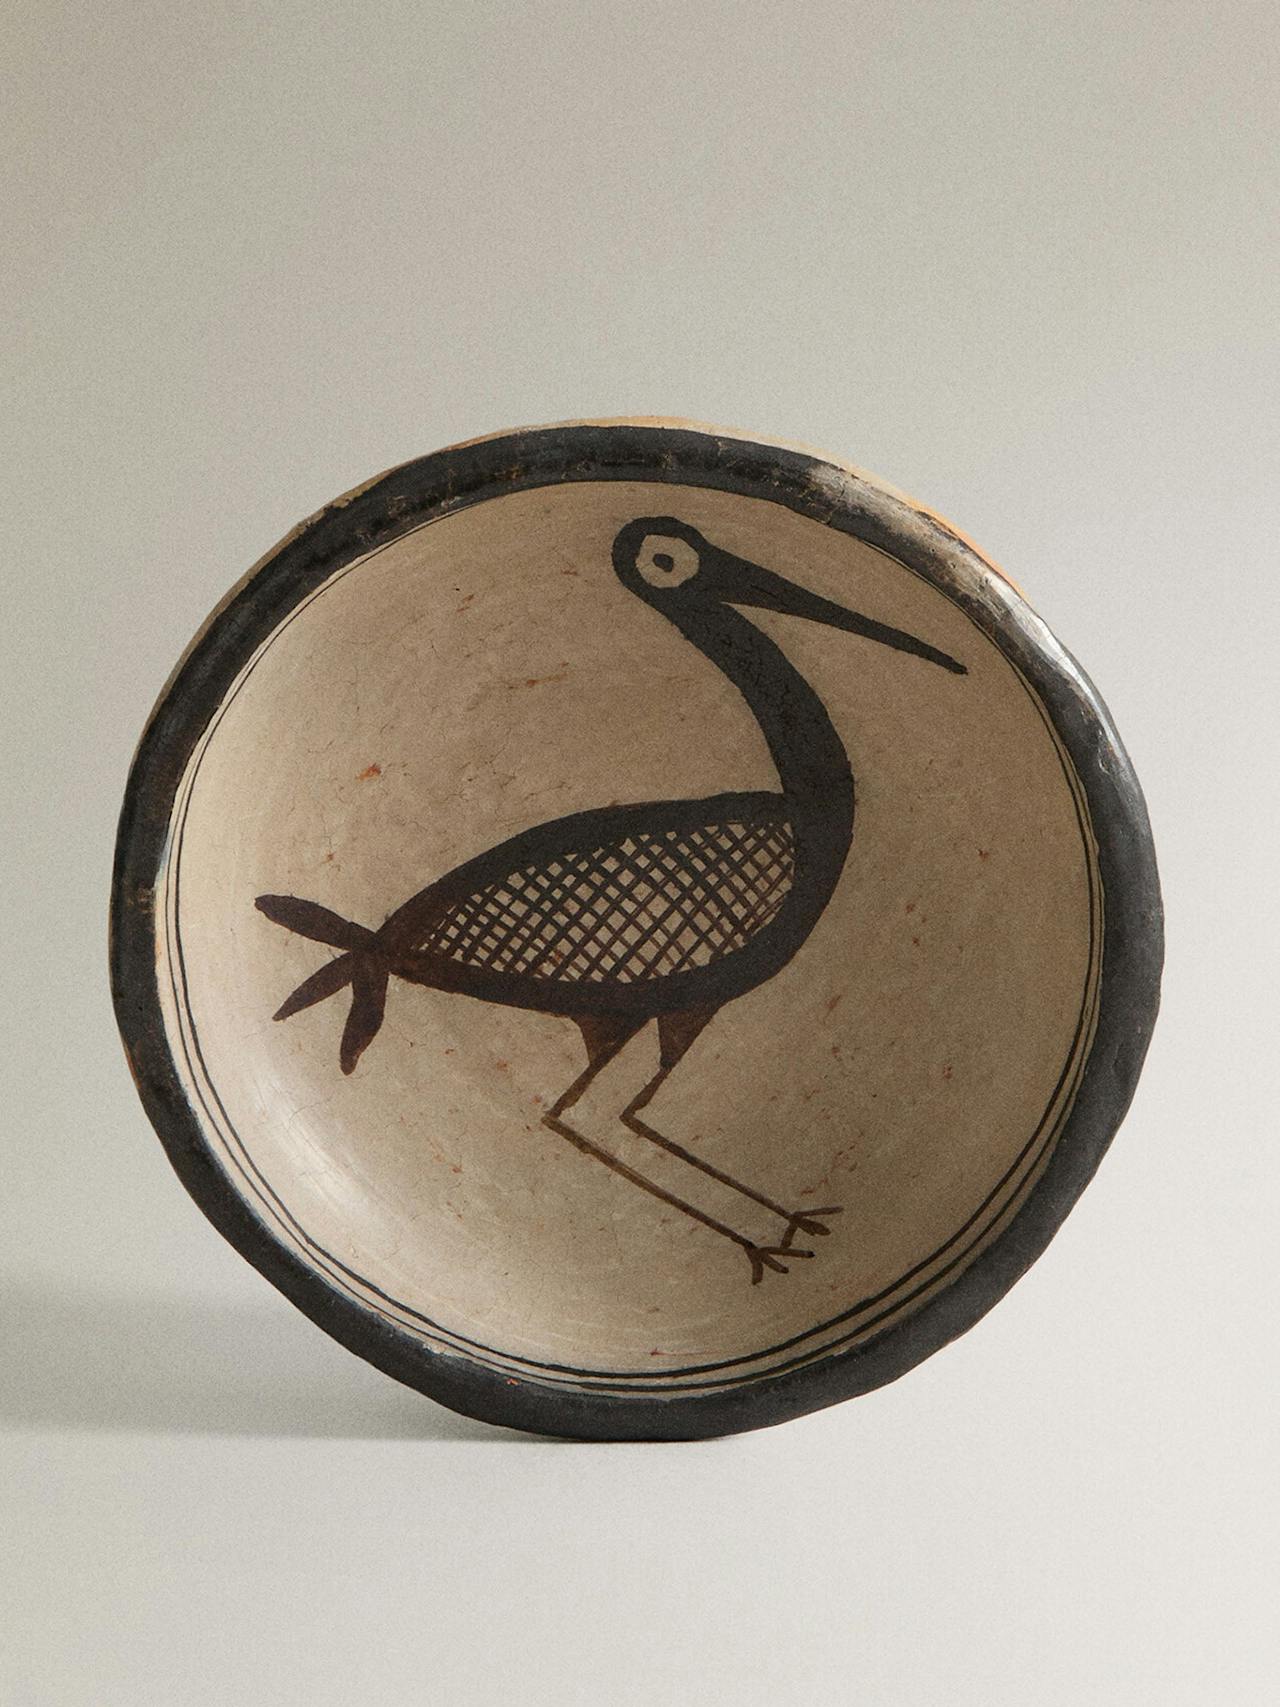 Decorative pelican bowl